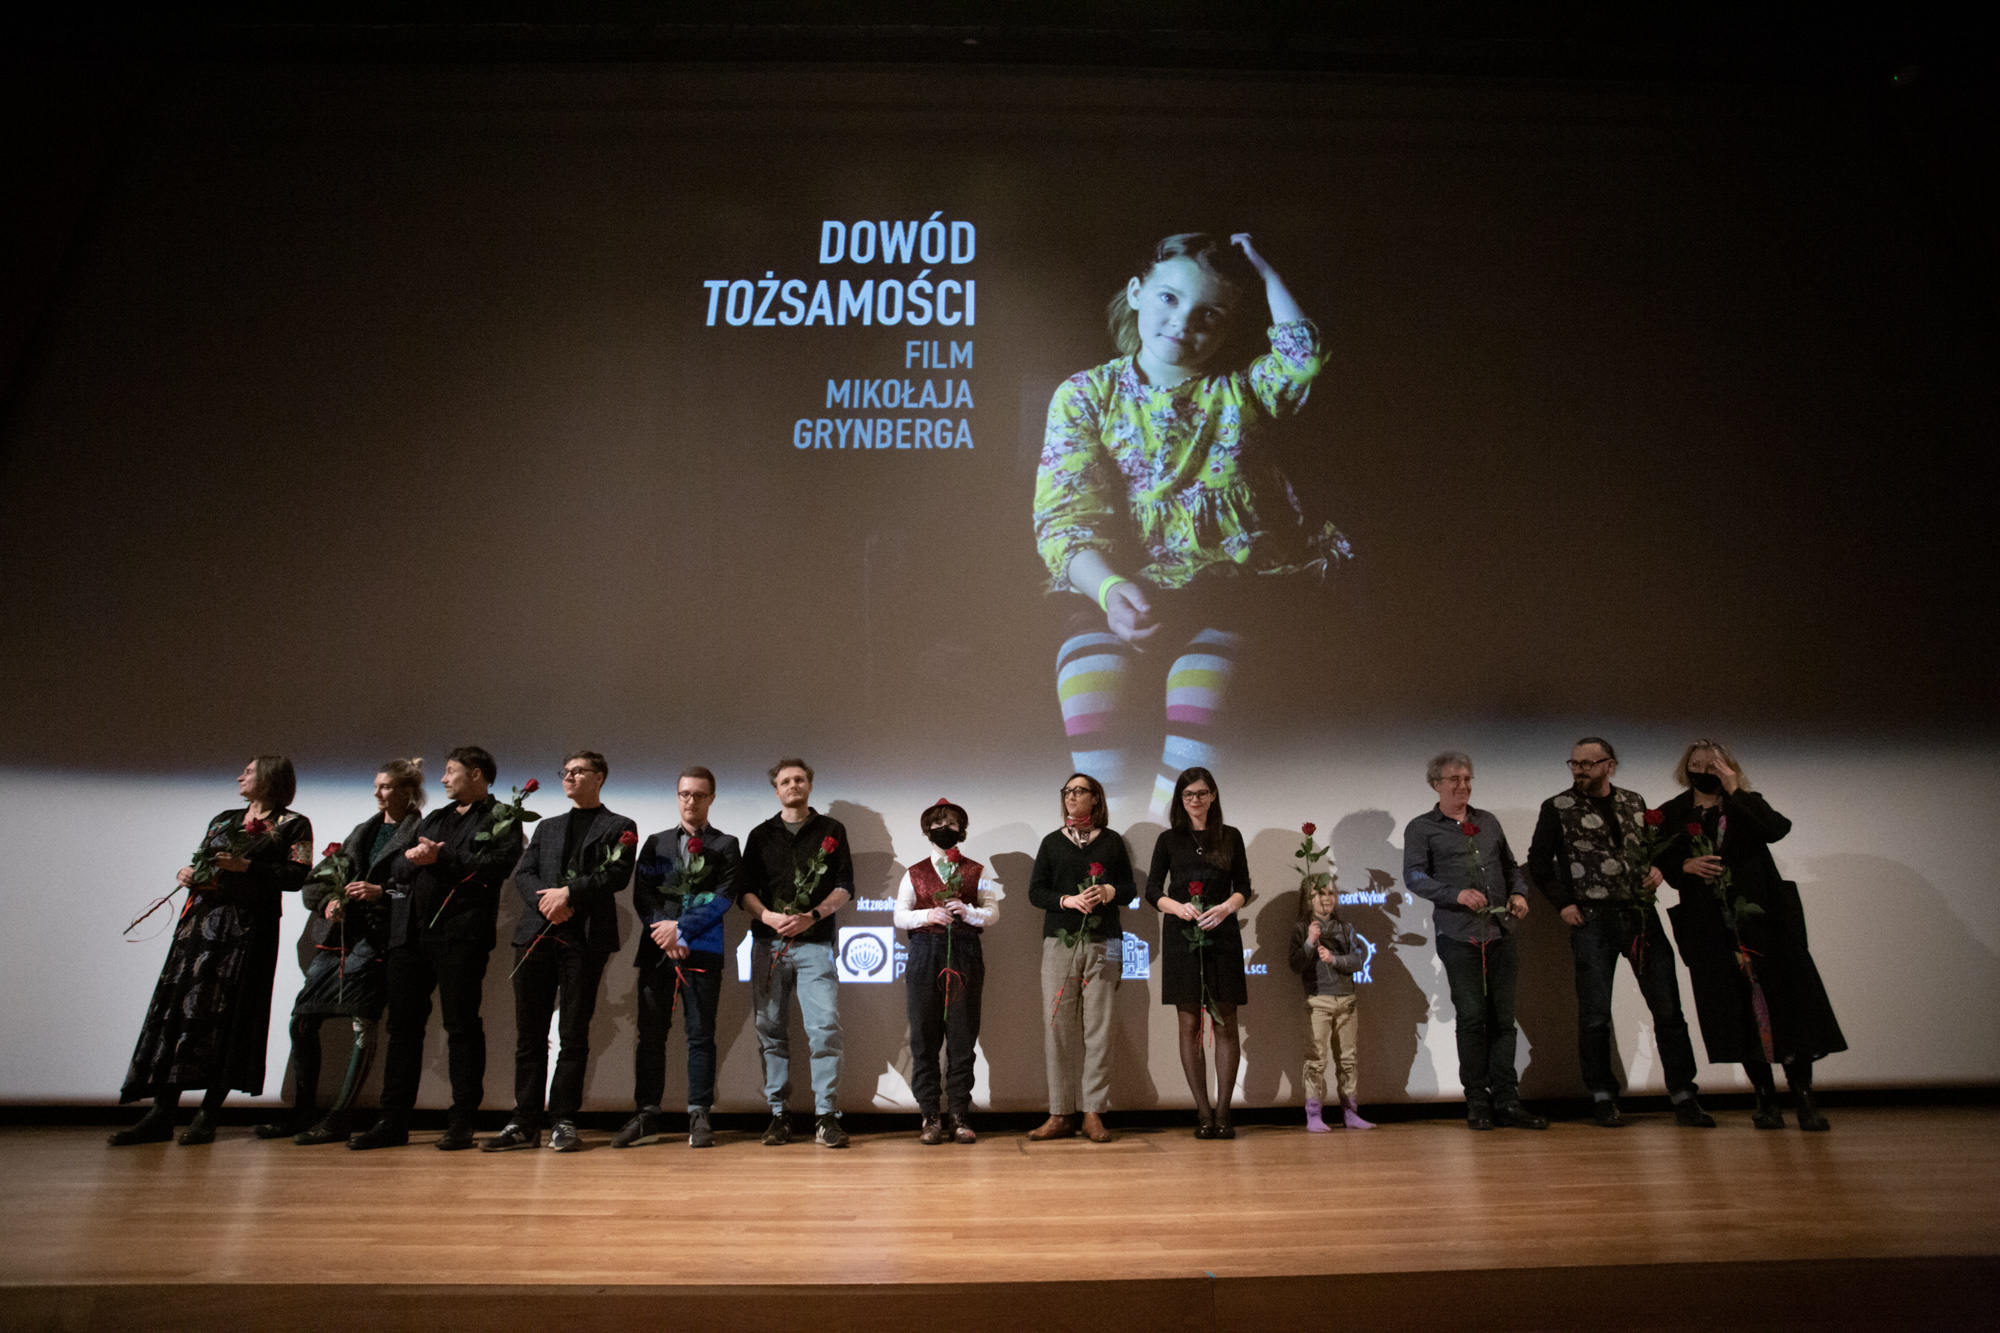 Na scenie w rzędzie stoi grupa ludzi. W tle bohaterka filmu "Dowód tożsamości", Chana Topińska oraz napis z tytułem filmu i podtytułem: Film Mikołaja Grynberga.